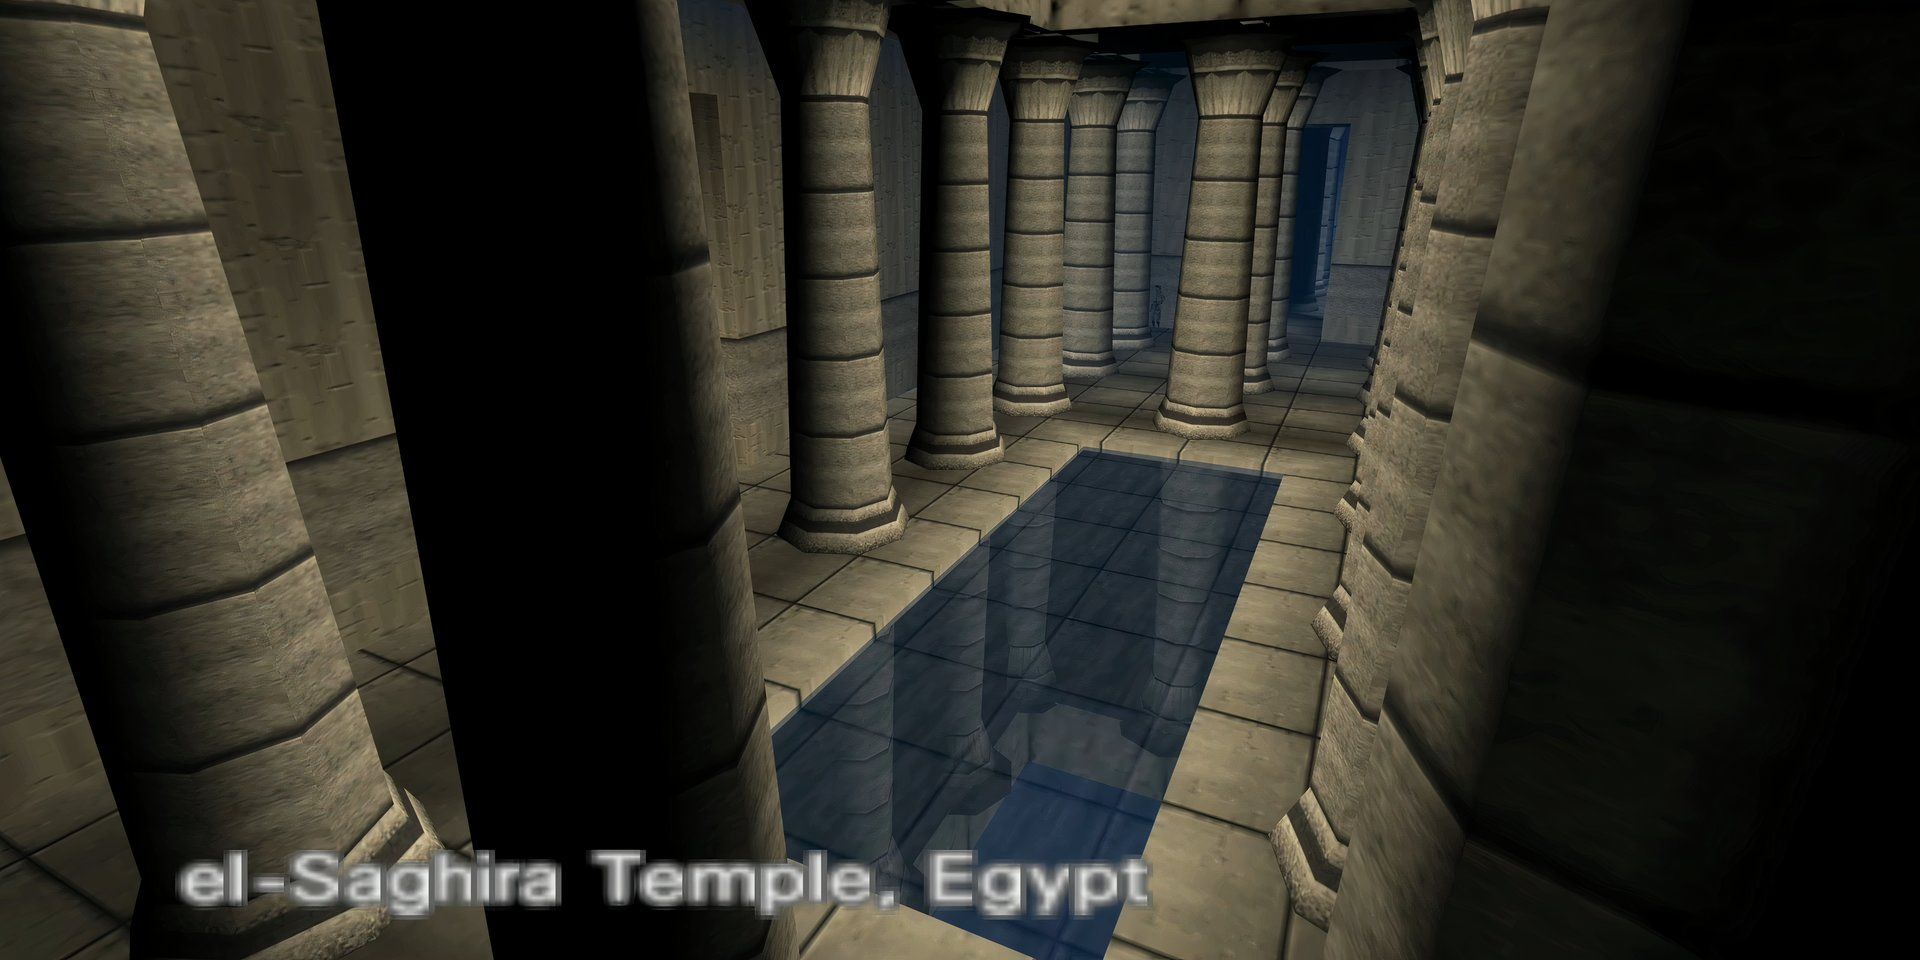 Egyptian, a secret level in Goldeneye 007